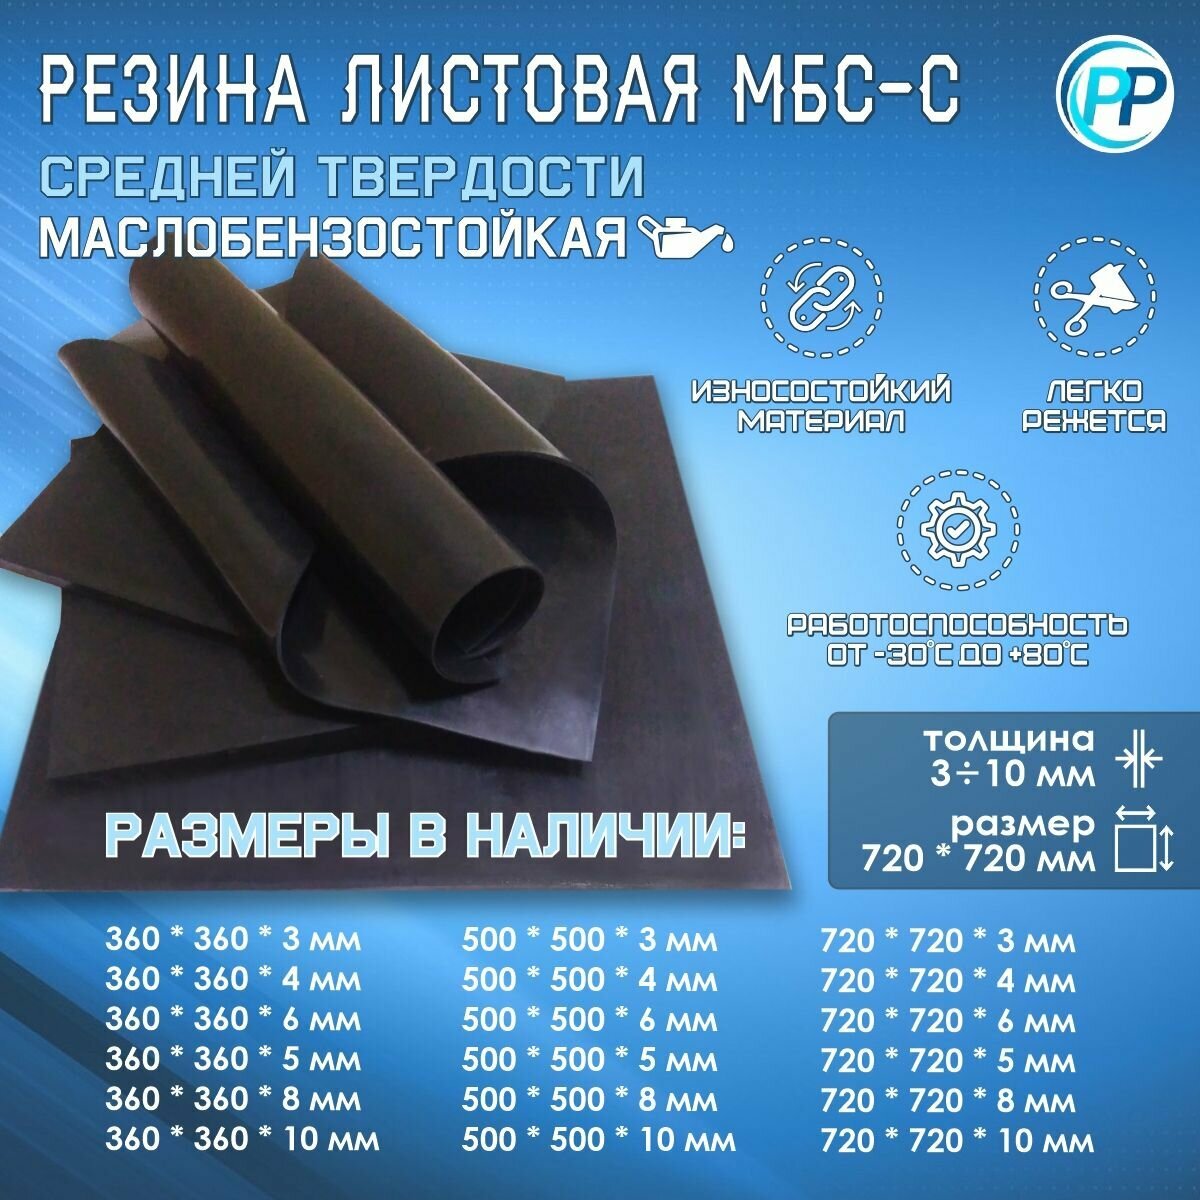 Резина листовая 2-ф 1 МБС (Маслобензостоикая) 10 мм 360х360 мм